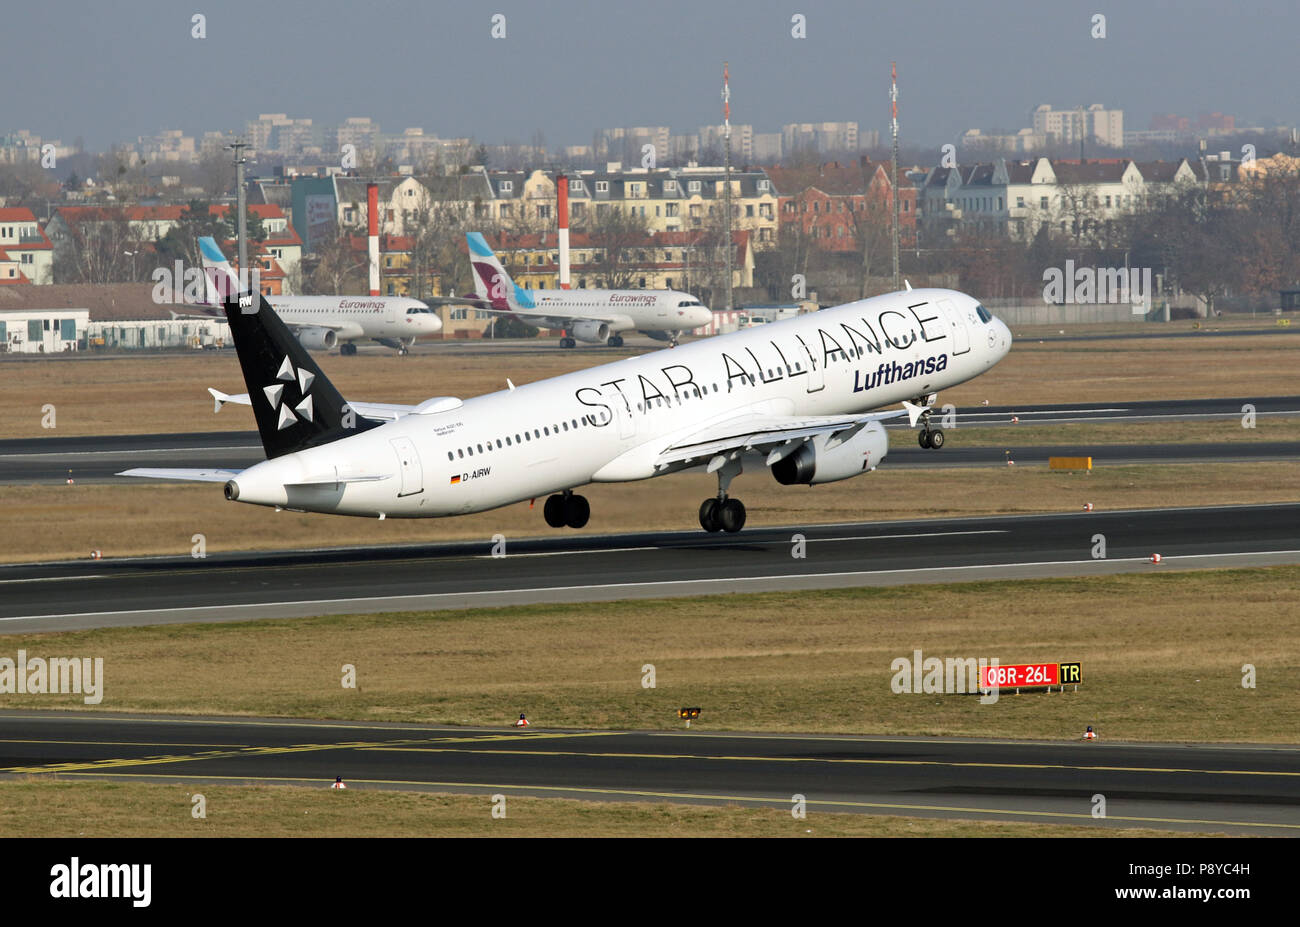 Berlín, Alemania, el Airbus A321 de la compañía aérea de Star Alliance Lufthansa en el despegue desde el aeropuerto Tegel Foto de stock